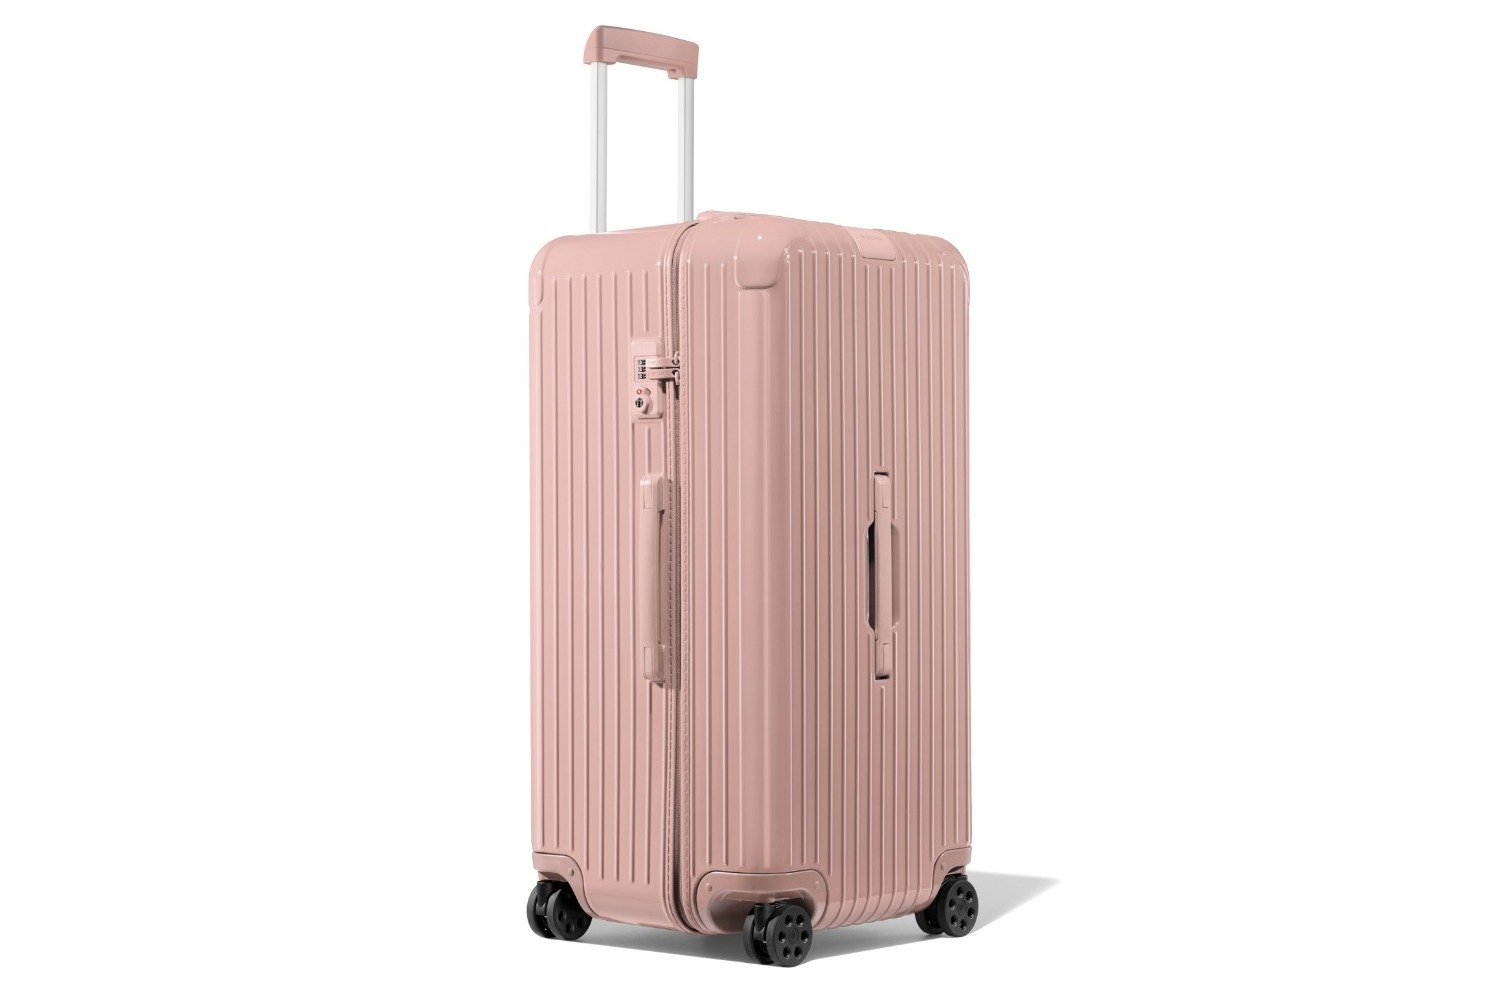 リモワのスーツケース「エッセンシャル」砂漠の情景に着想した新色、空 